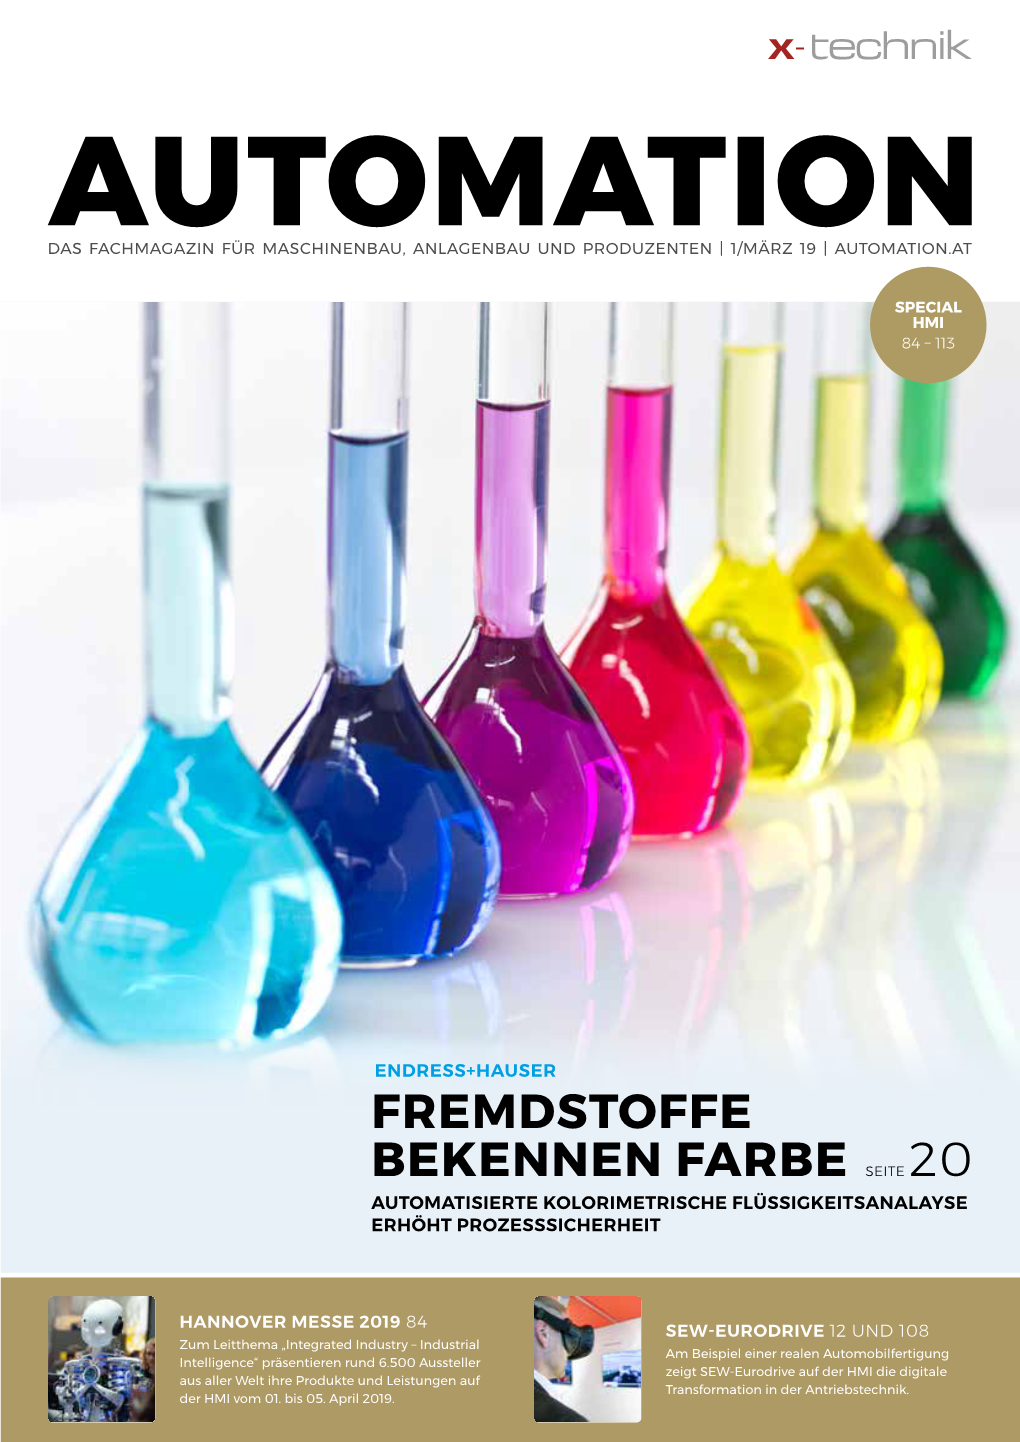 Fremdstoffe Bekennen Farbe Seite 20 Automatisierte Kolorimetrische Flüssigkeitsanalayse Erhöht Prozesssicherheit